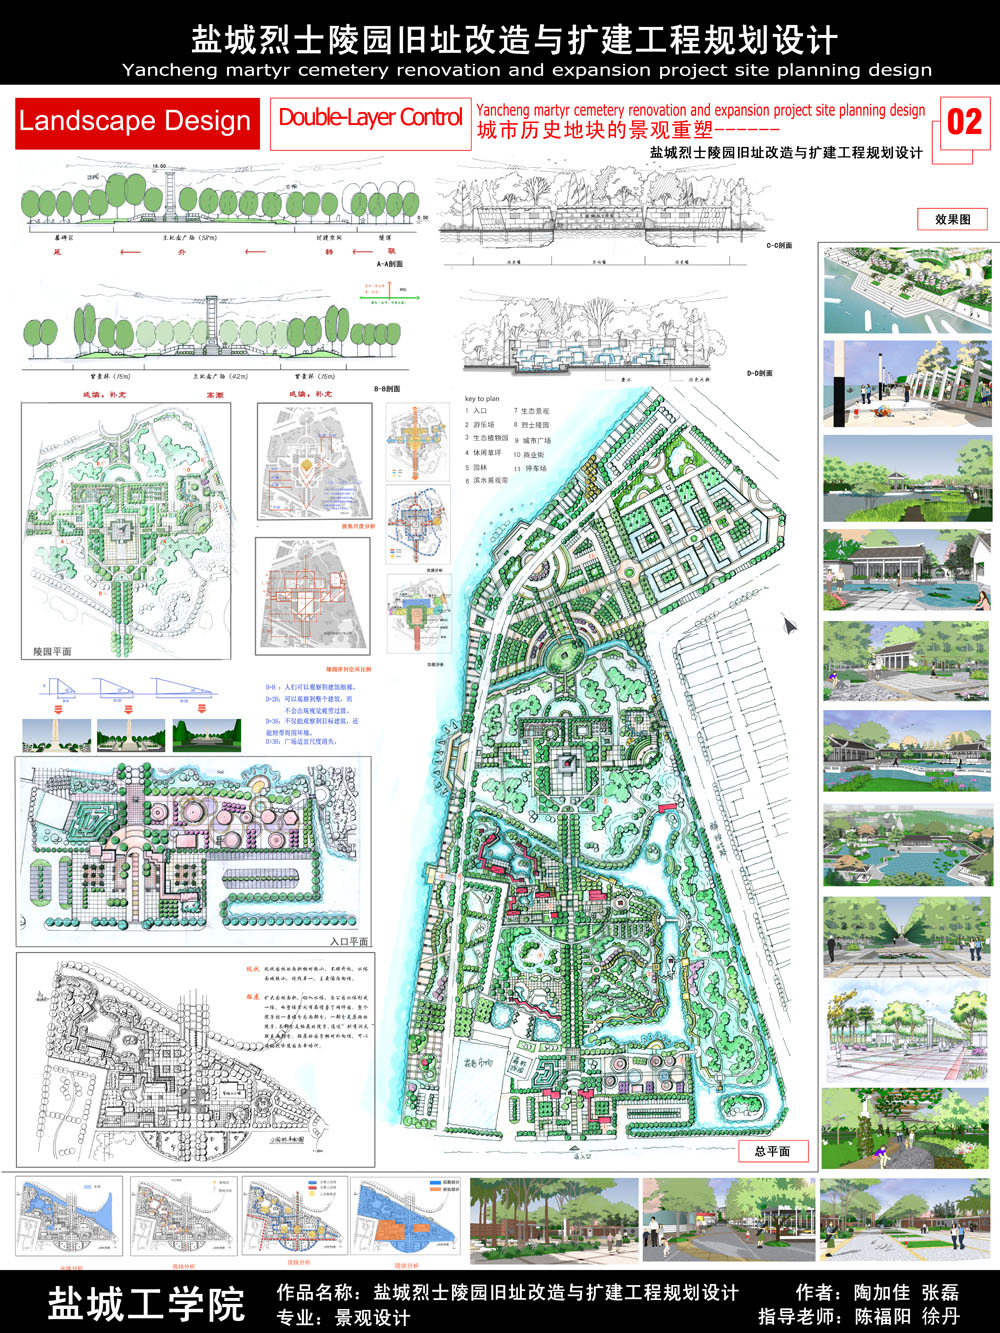 盐城烈士陵园旧址改造与扩建工程规划设计-2